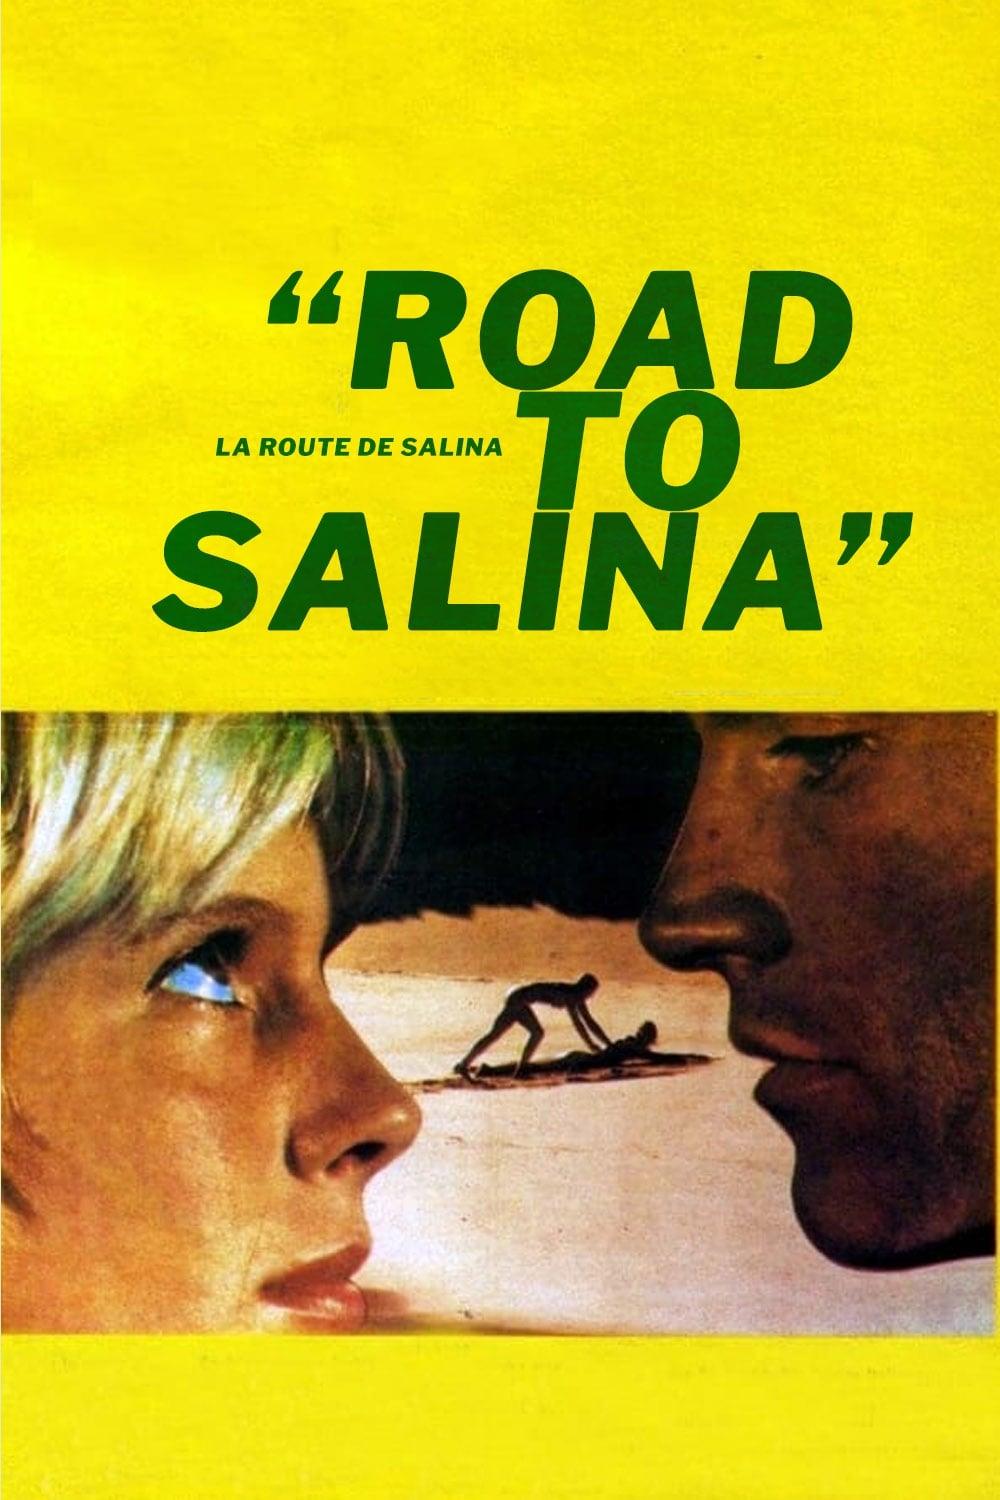 Road to Salina poster